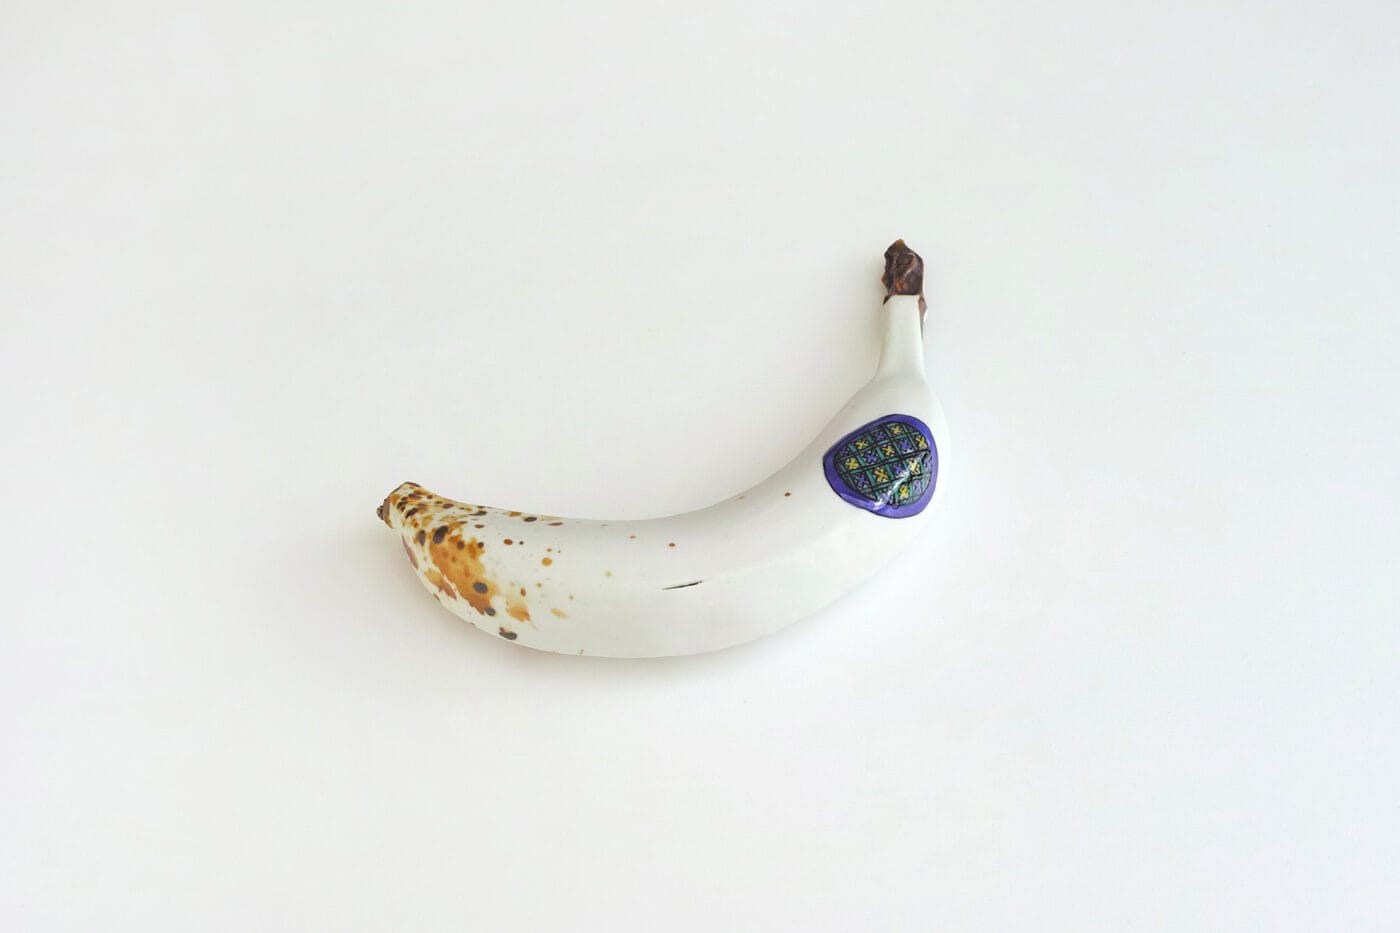 九谷焼窯元を継承しながら現代美術作家としても活動する上出惠悟の個展「新蕉」、Yoshimi Artsにて。代表作『甘蕉』の新作を発表。